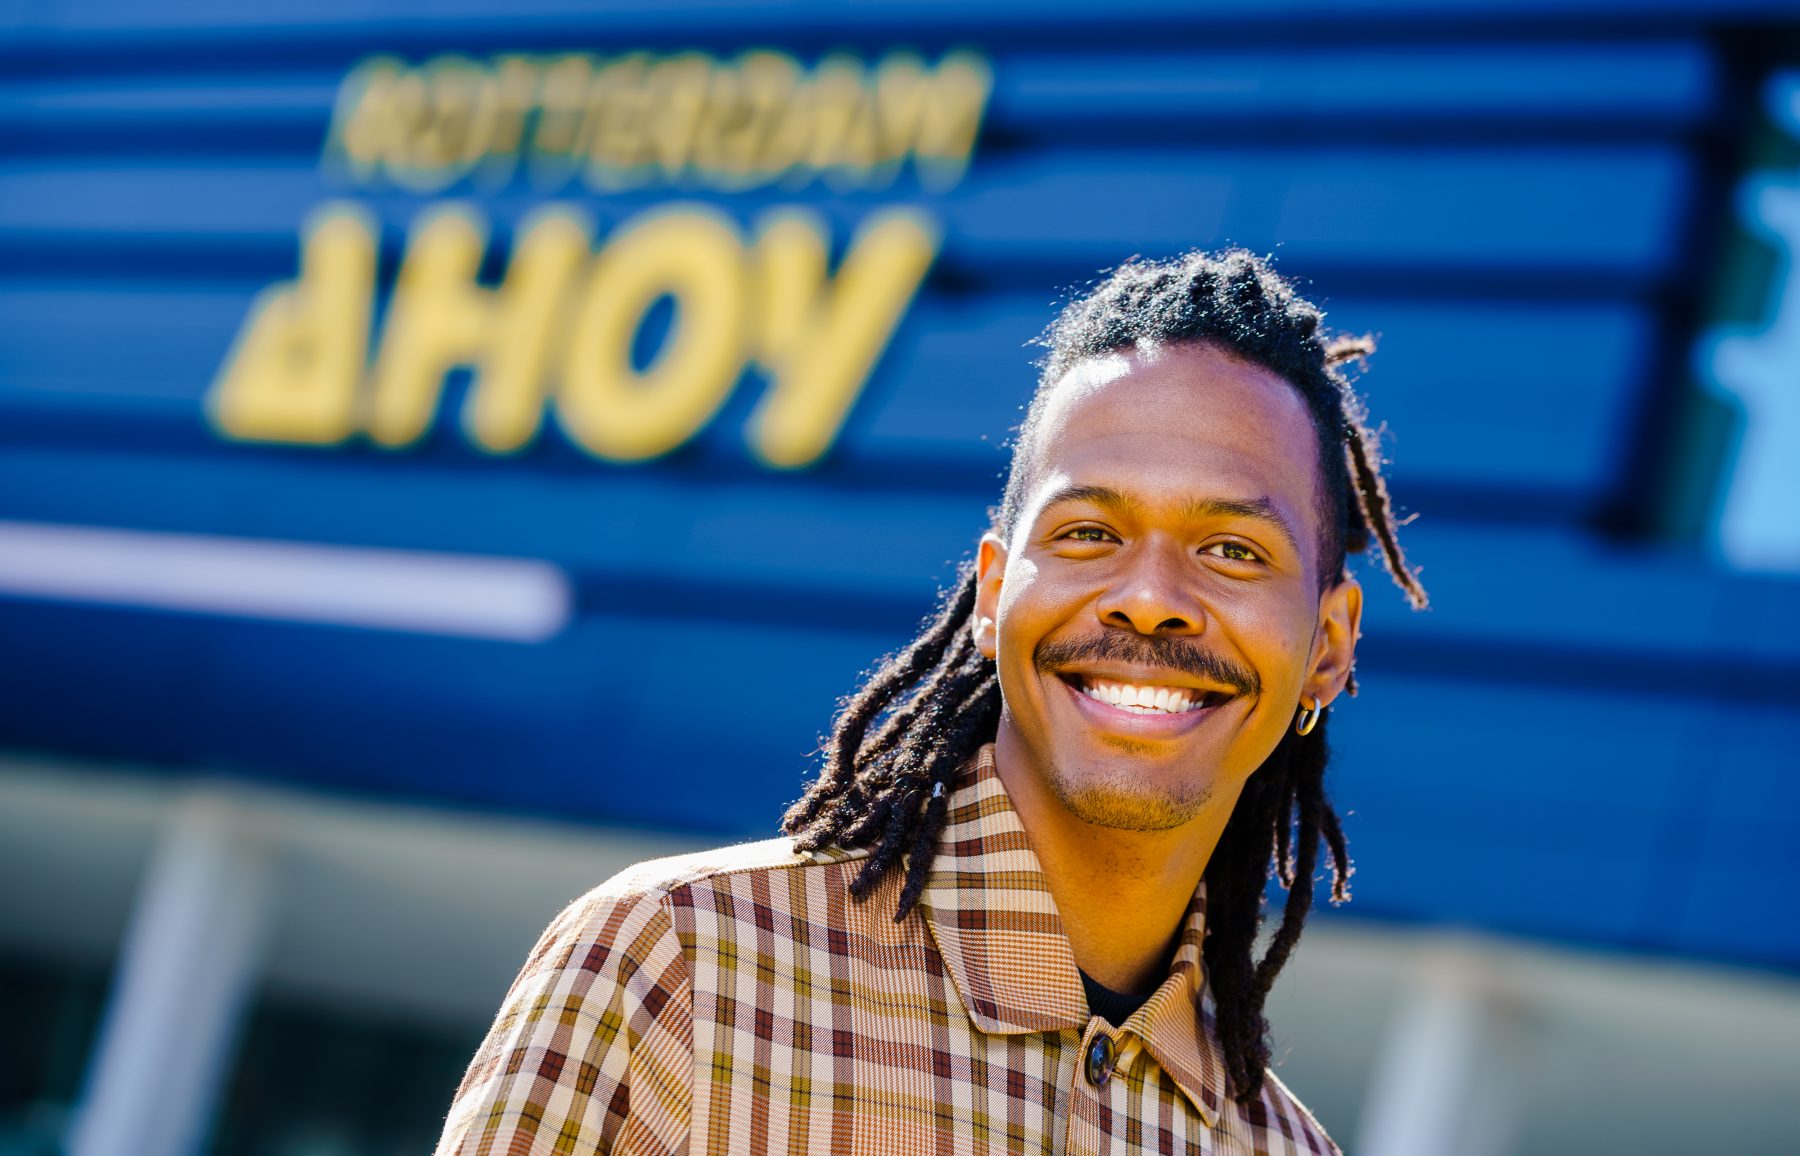 Eurovisie Songfestival strijkt neer in Rotterdam Ahoy